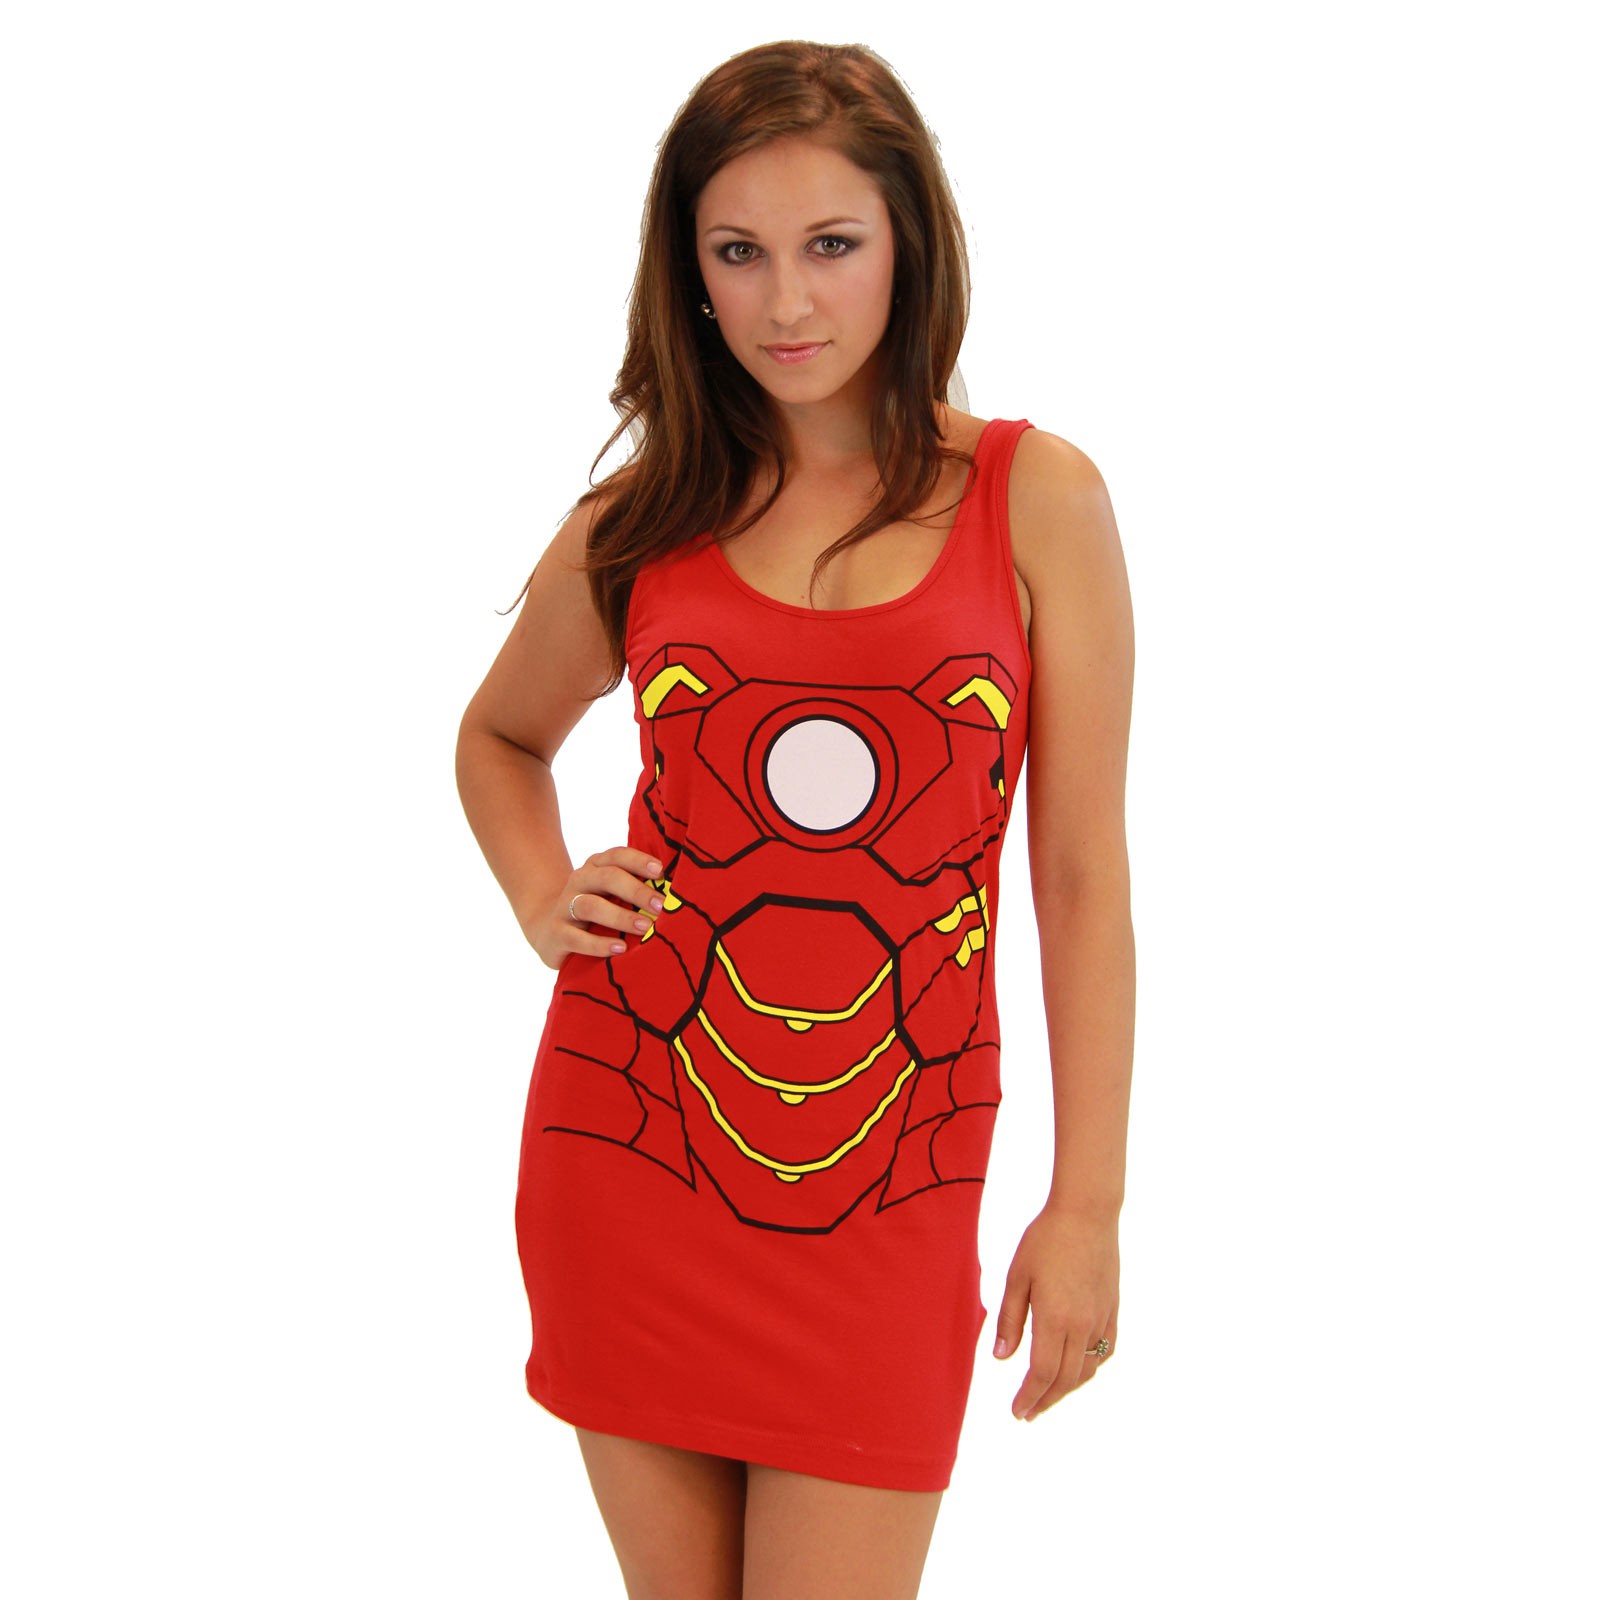 Women's Iron Man Cotton/Spandex Tank Dress